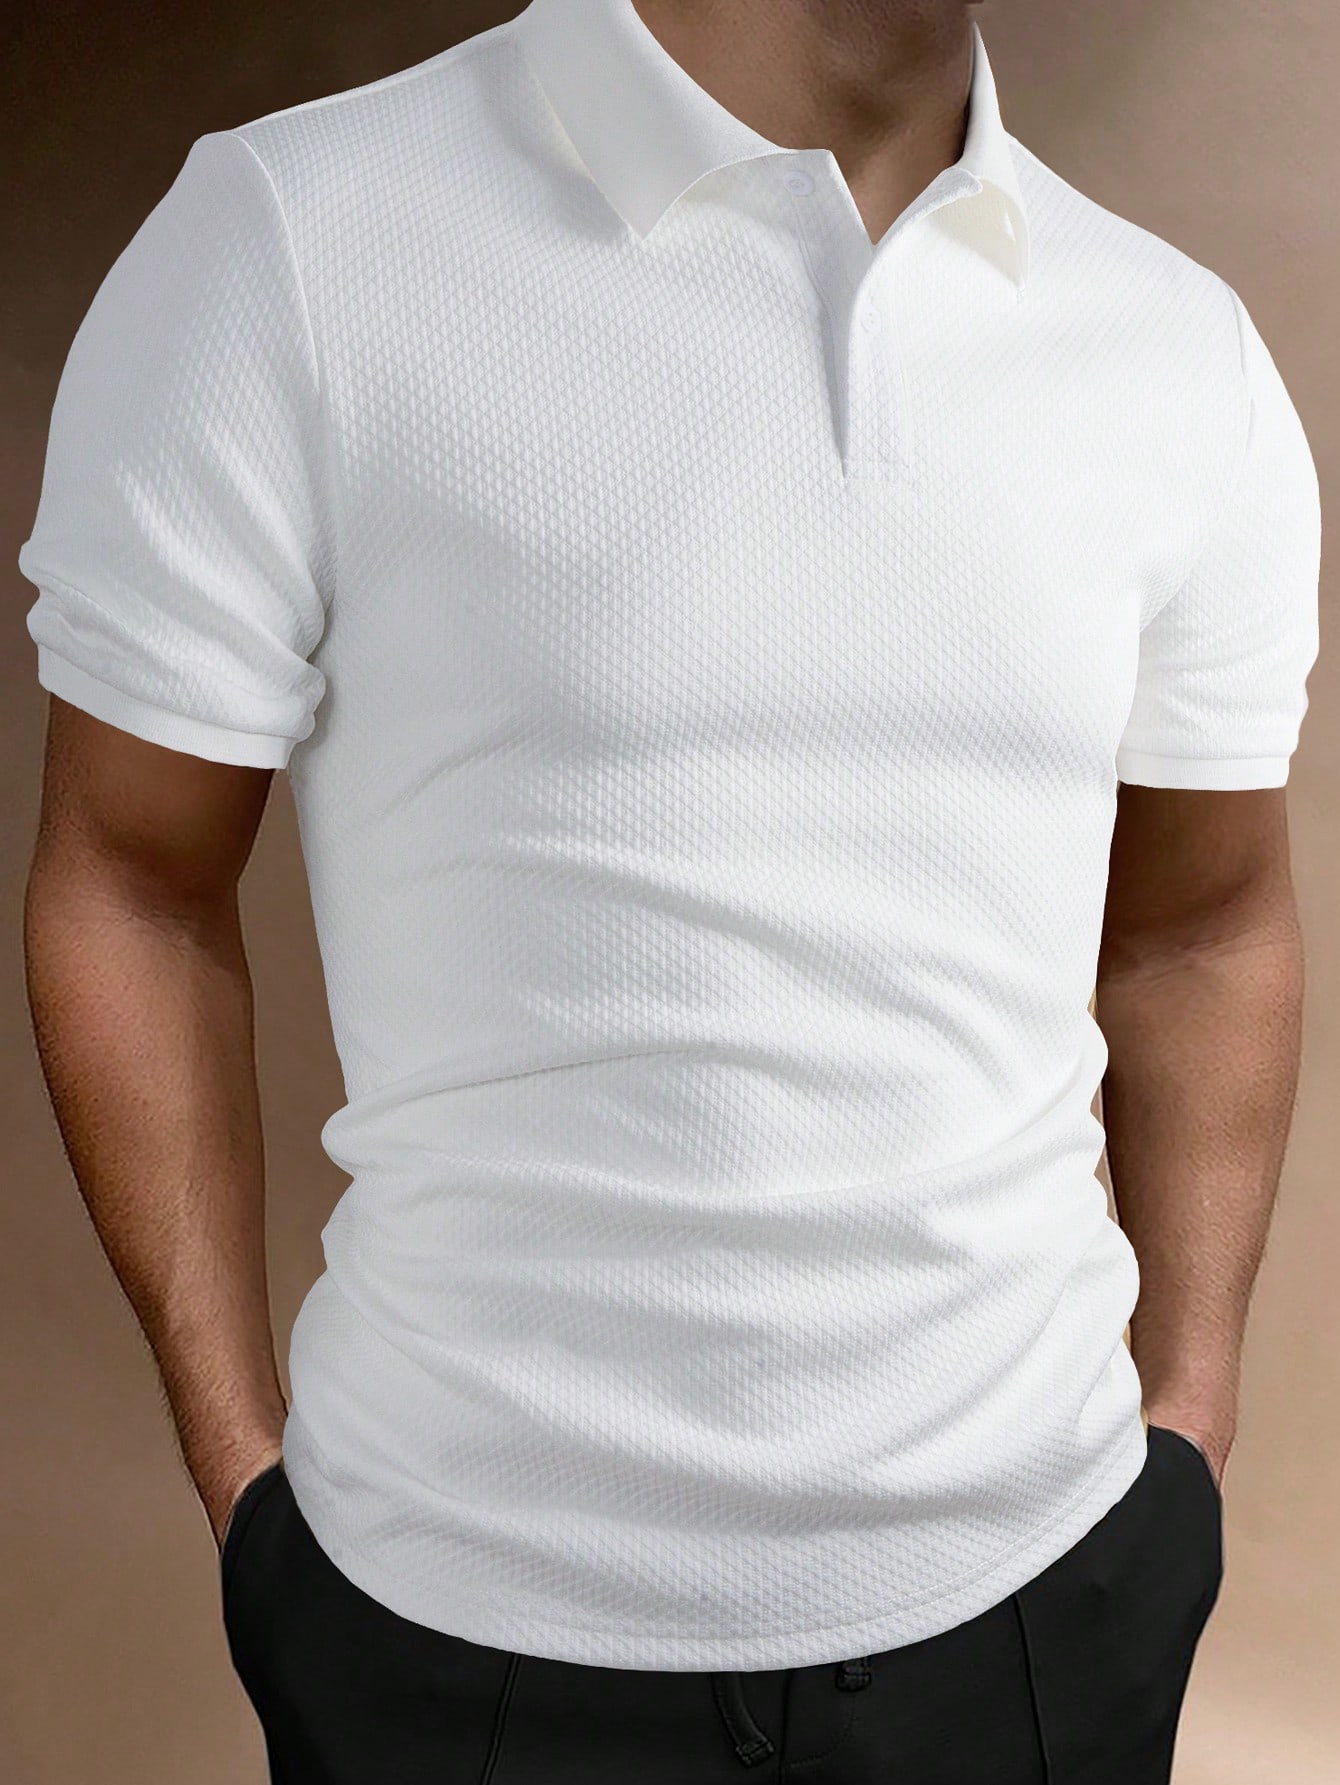 Мужская однотонная повседневная рубашка-поло Manfinity Homme, белый мусульманская рубашка мужская бронзовая повседневная длинная мужская